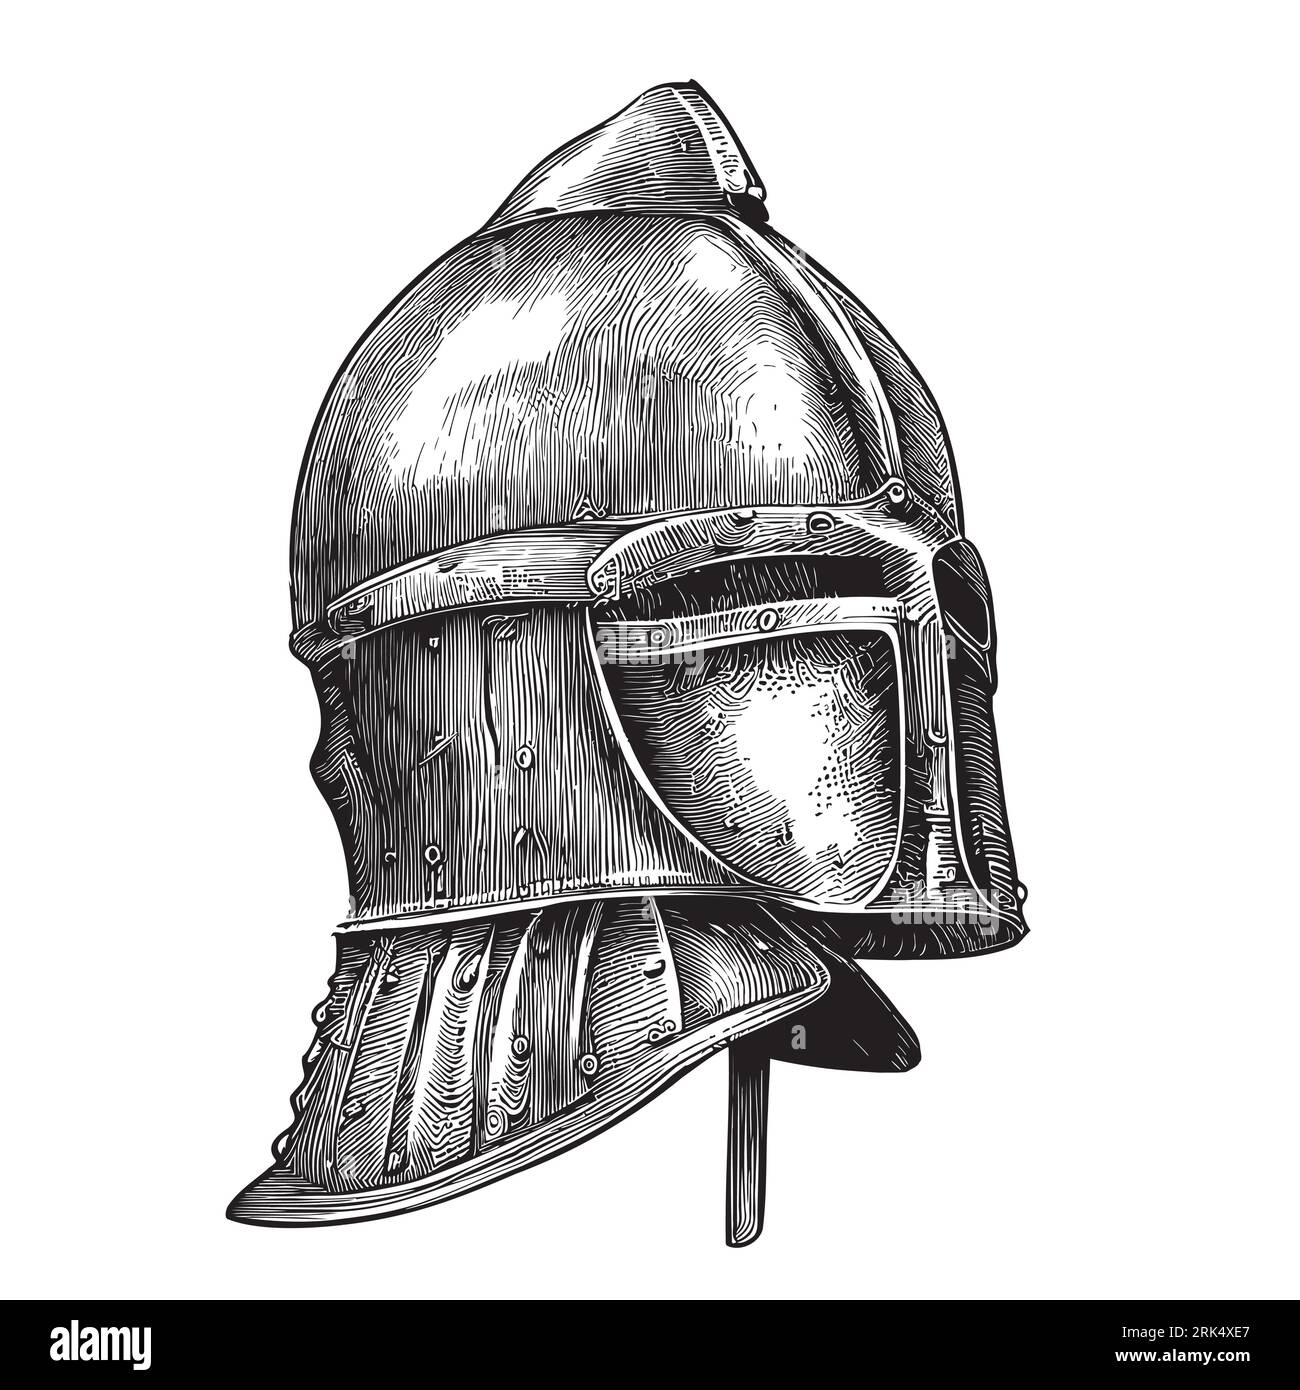 Boceto de casco de caballero dibujado a mano ilustración de la Edad Media Ilustración del Vector